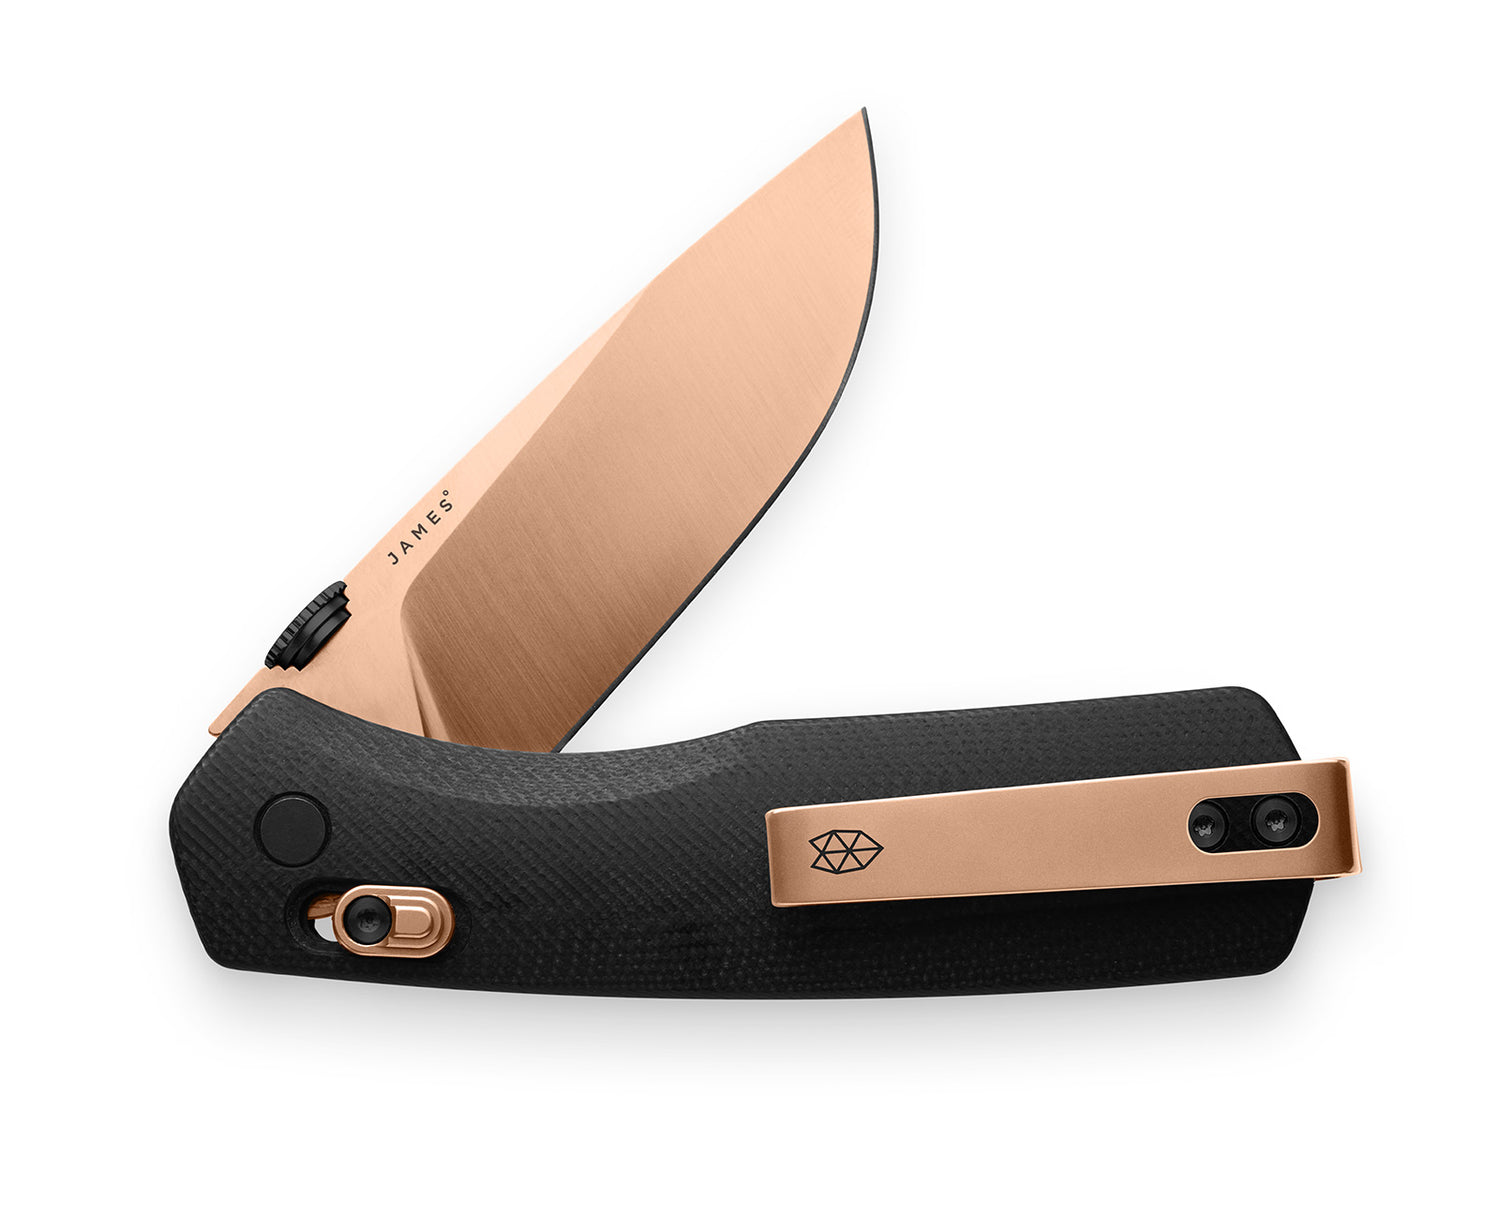 Professional Precision Adjust™ Knife Sharpener